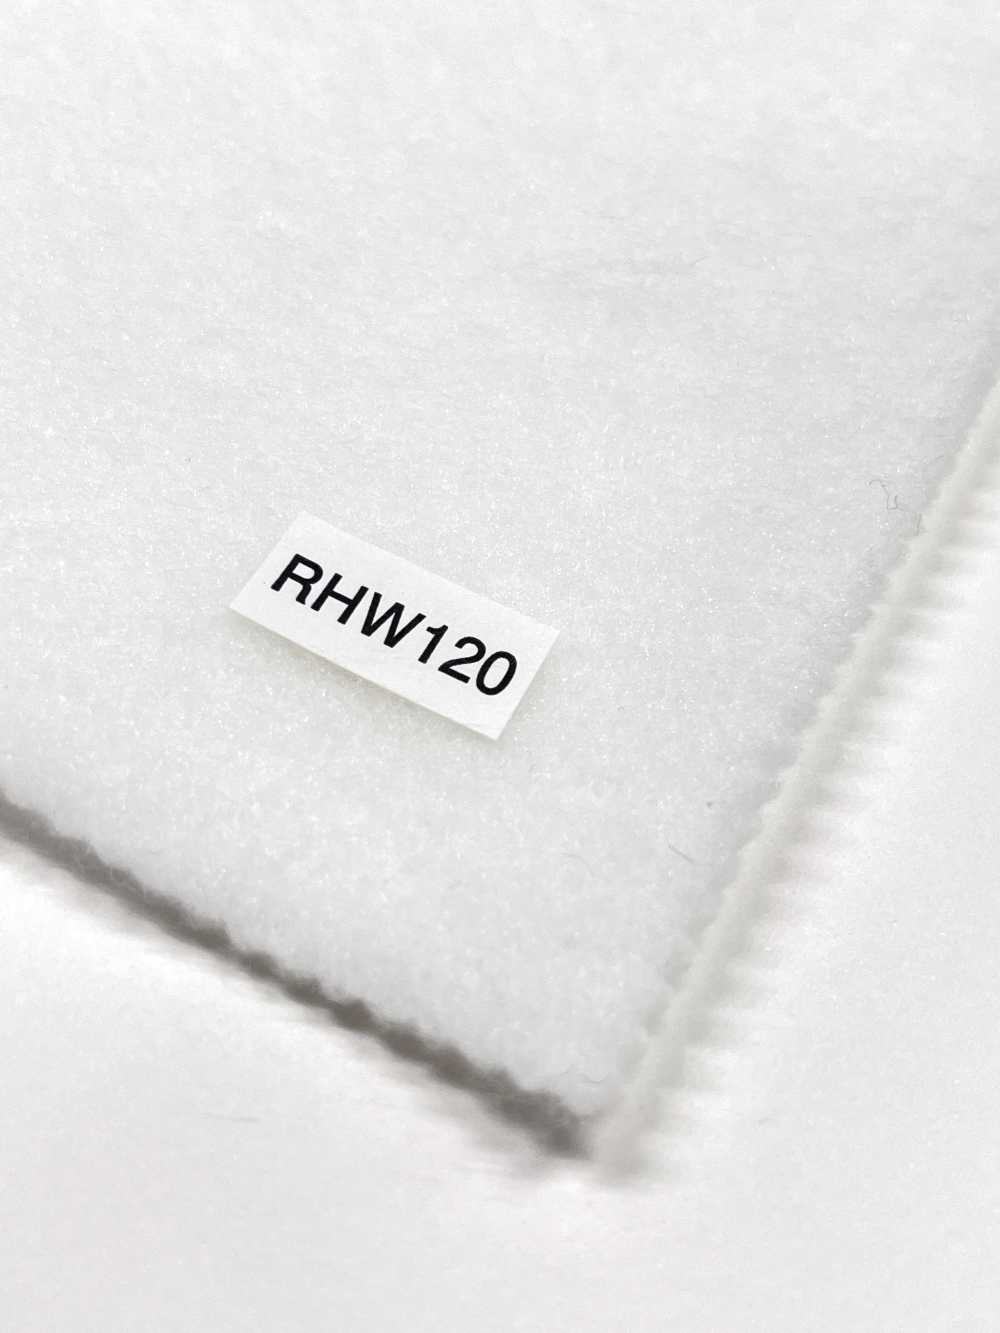 RHW120 Conbel NOWVEN(R) Domit 系列粘合衬软型[衬布] 康贝尔（Conbel）